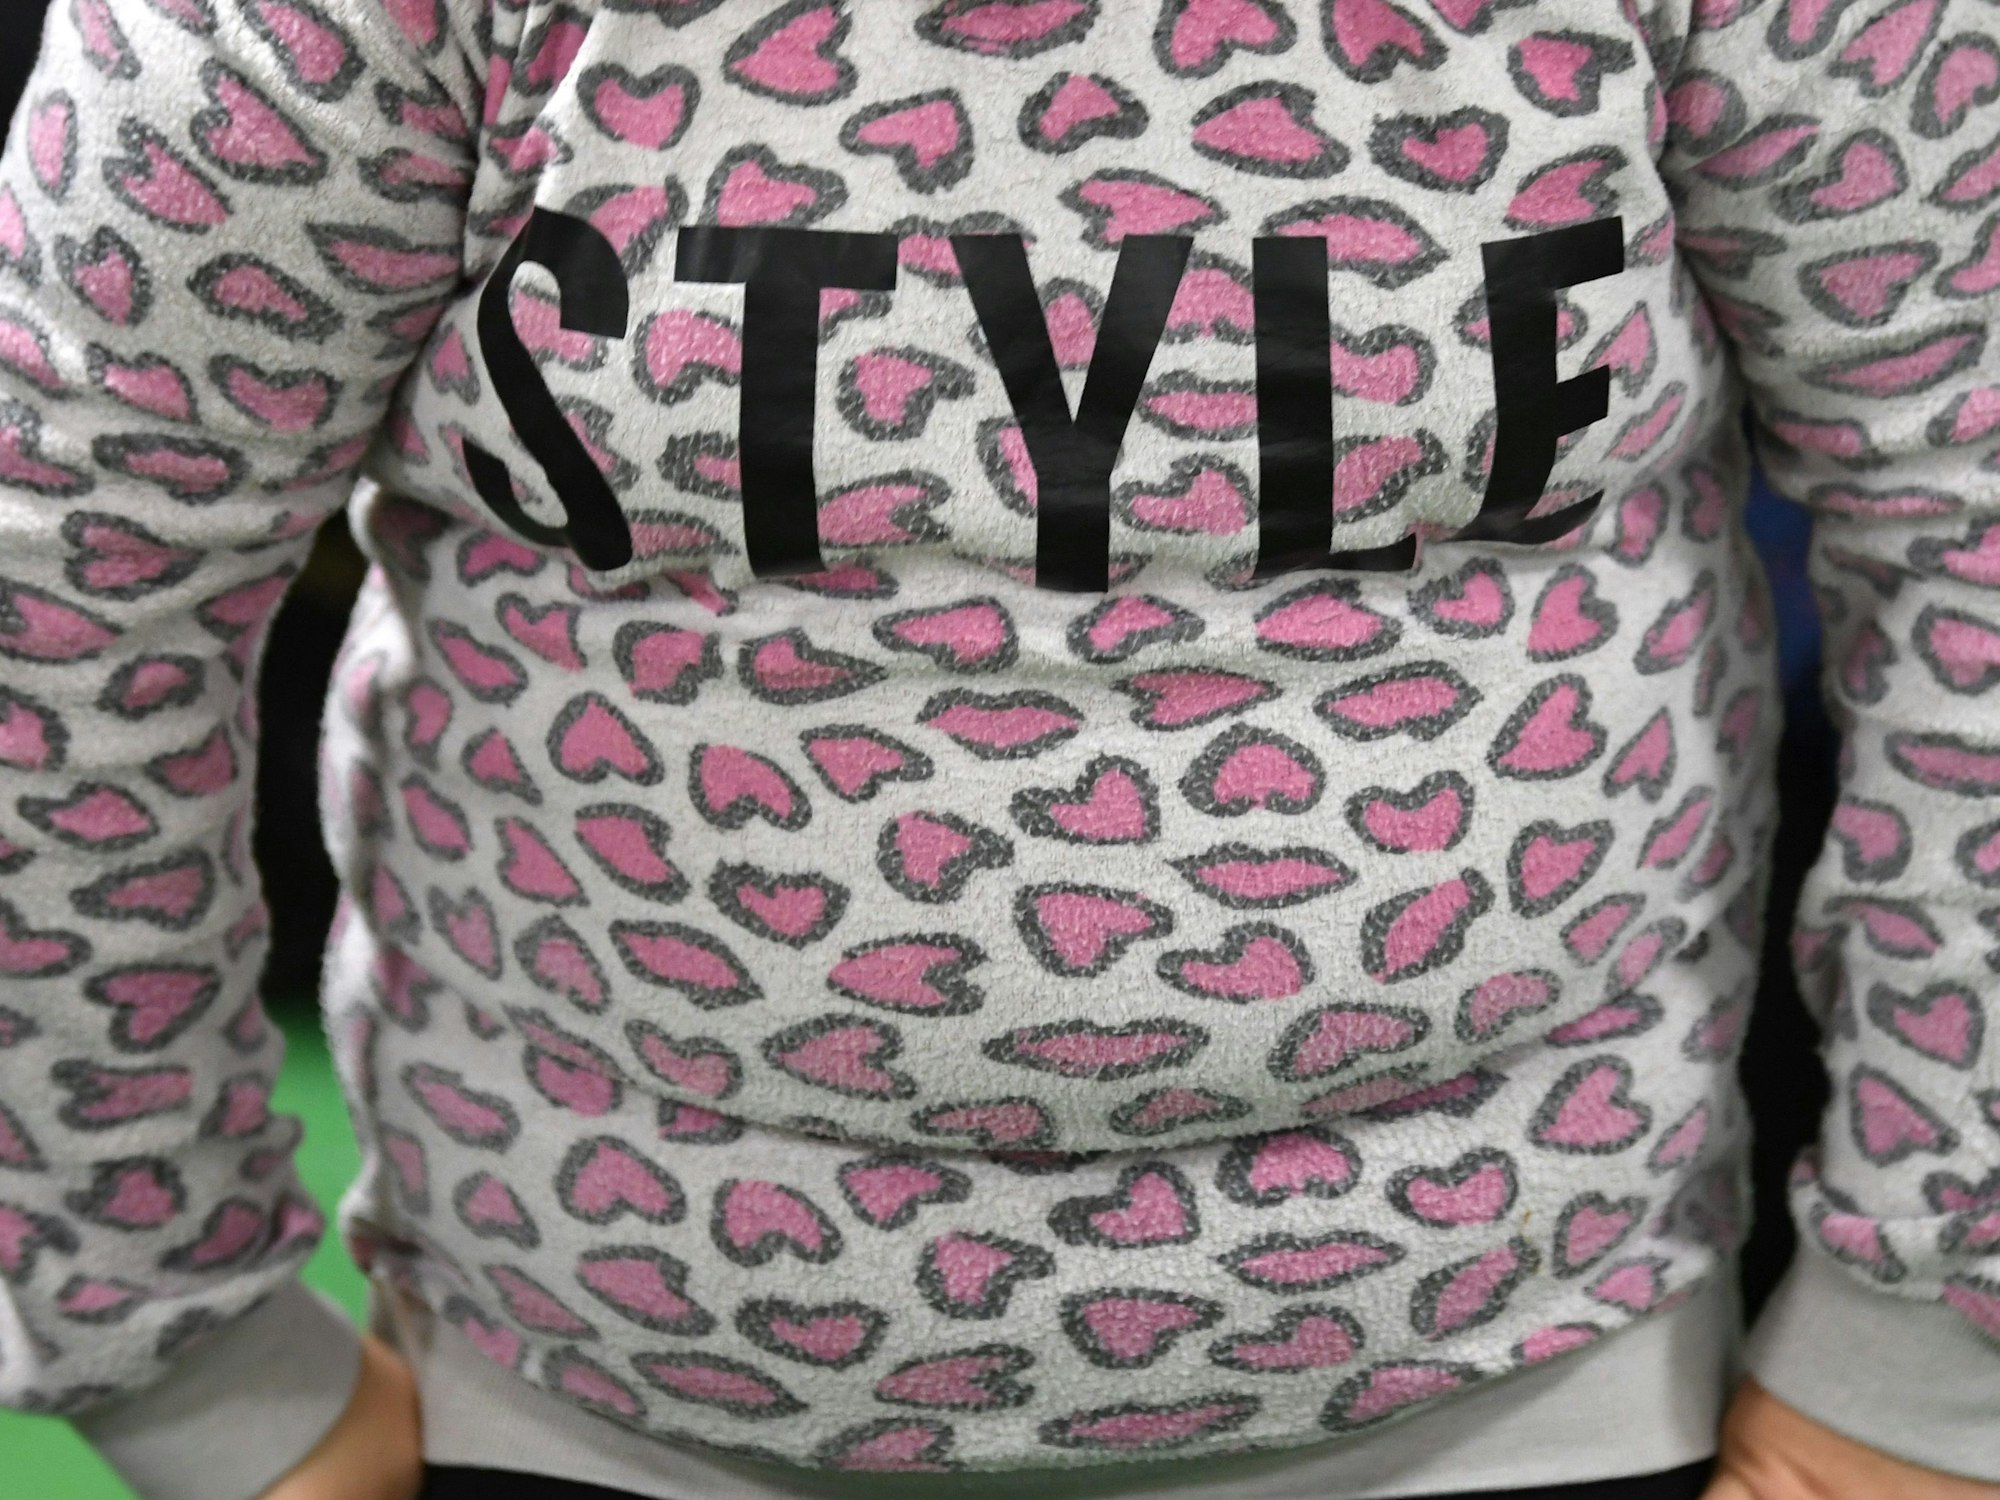 Ein übergewichtiges Kind trägt einen Pulli mit dem Schriftzug ‚Style‘. Dieses Symbolfoto wurde im Jahr 2017 aufgenommen